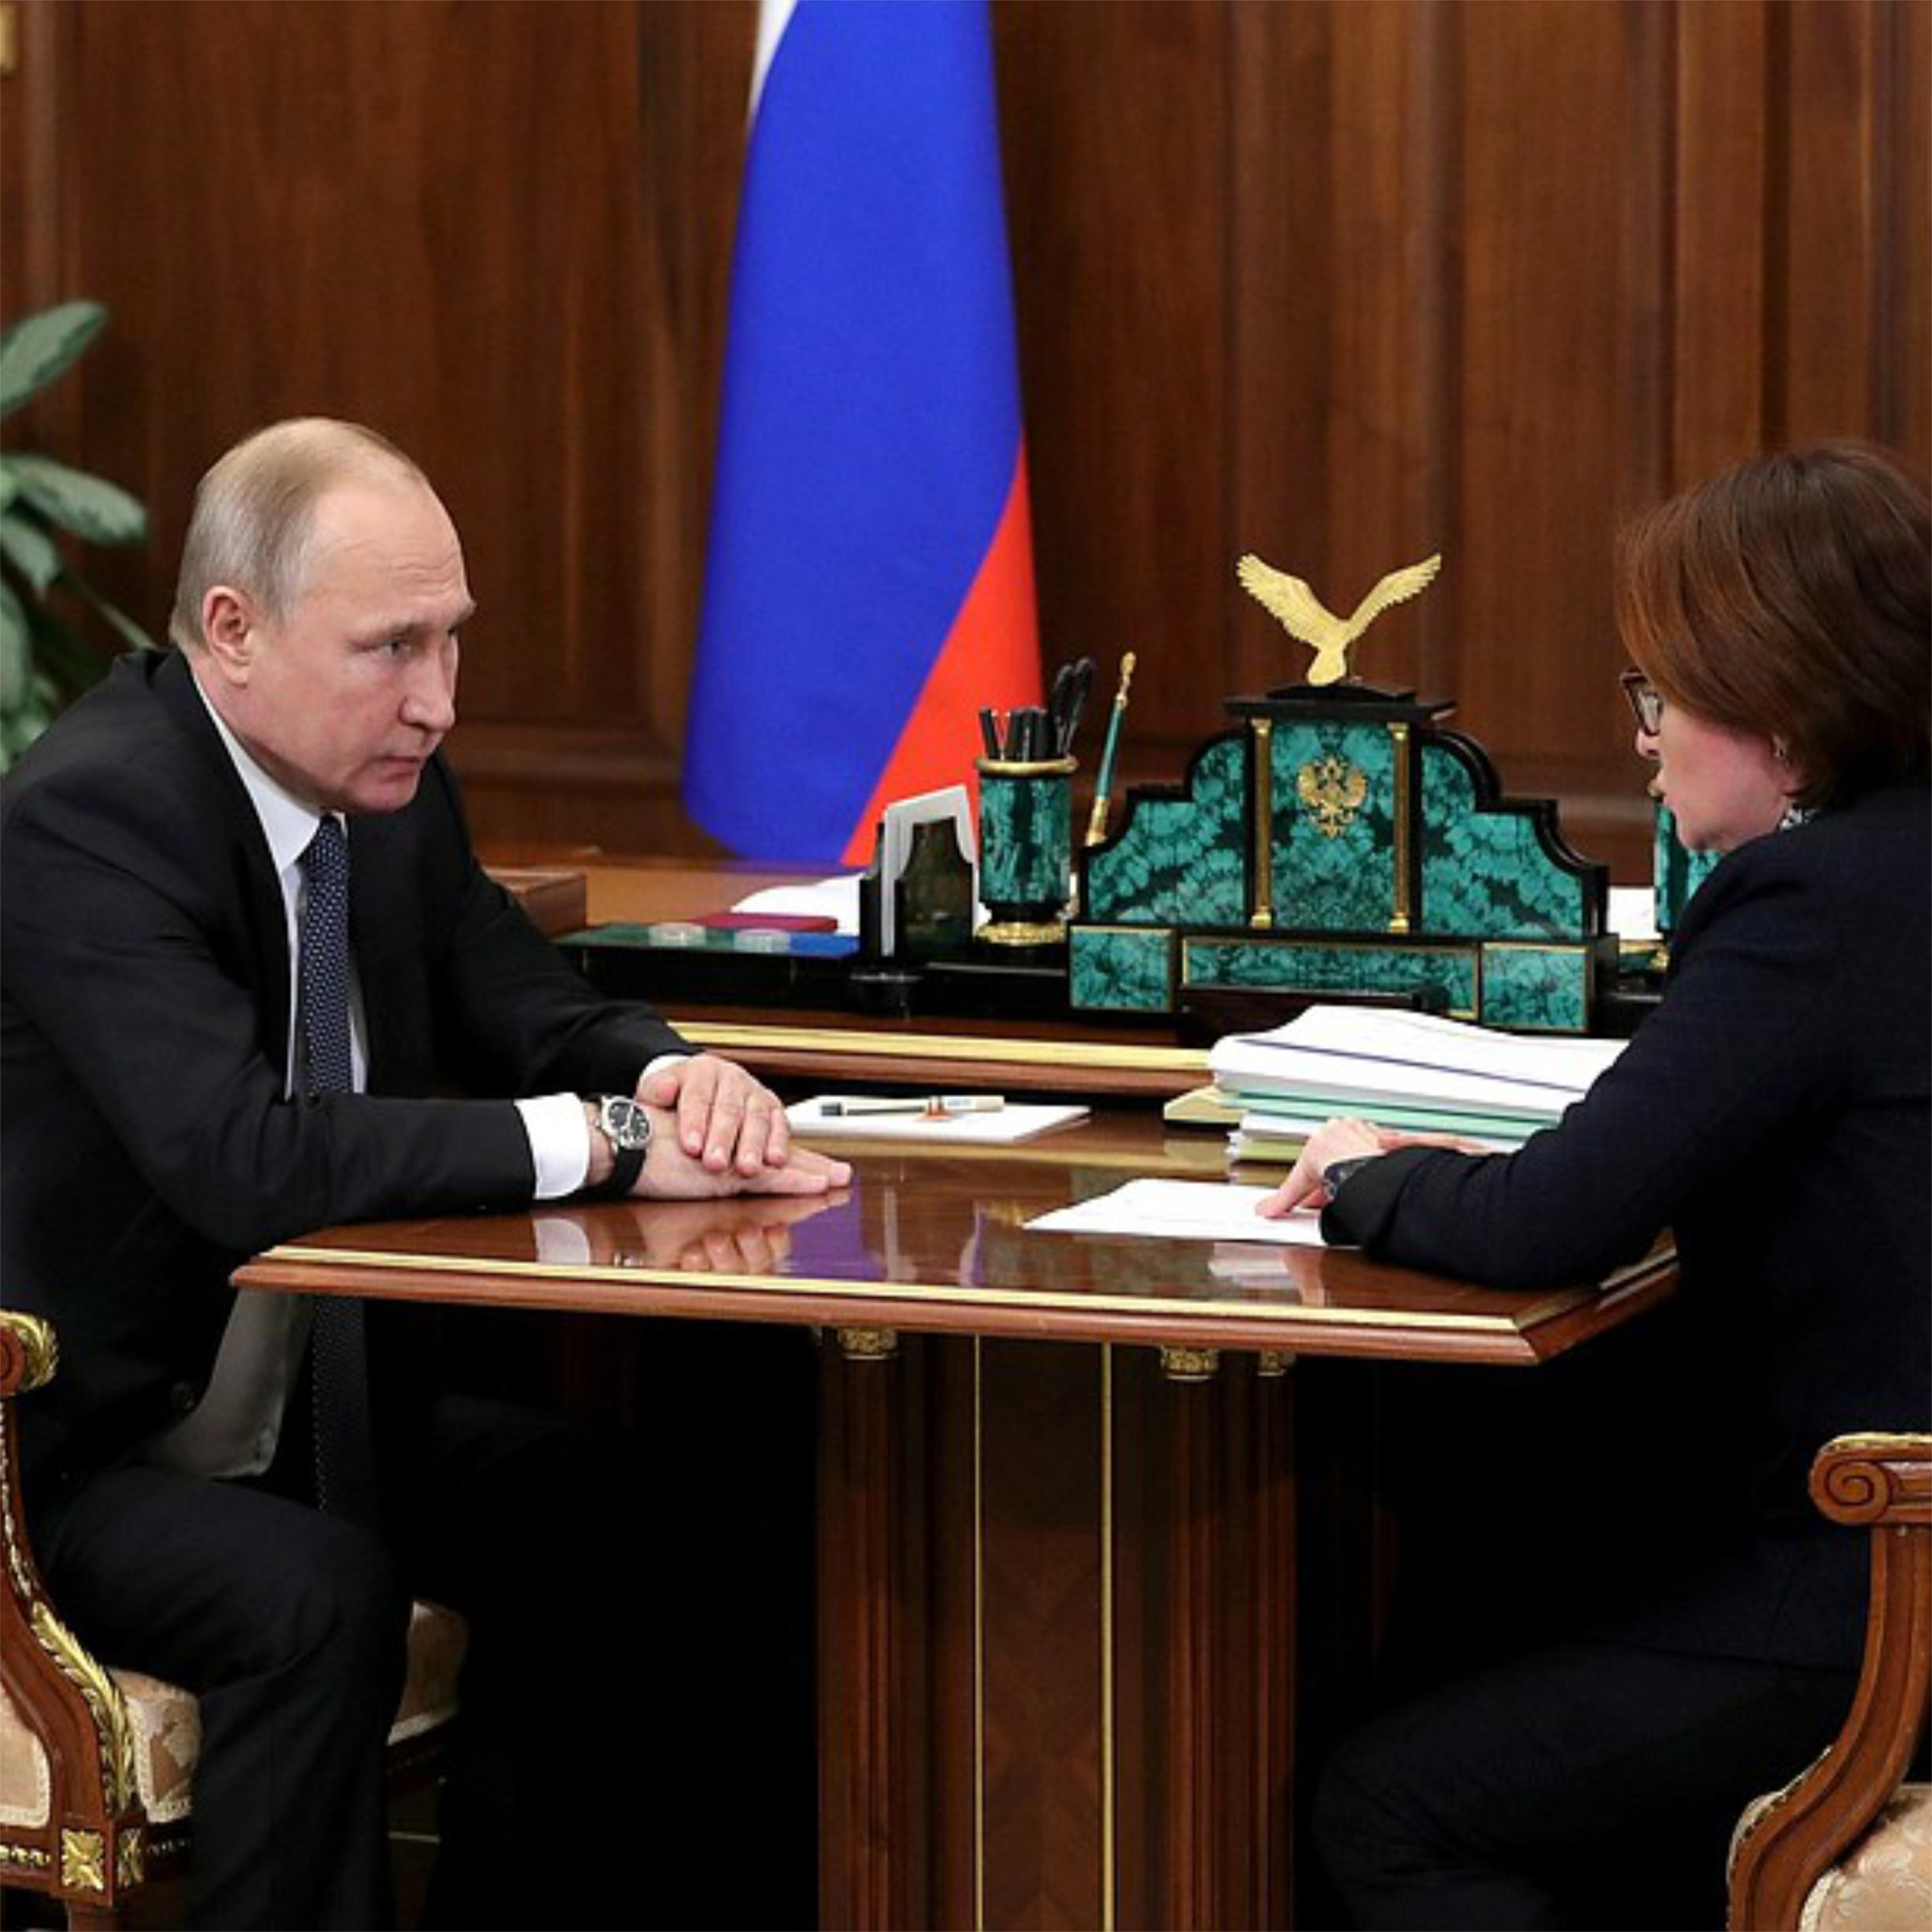 Встреча с Председателем Центрального банка Эльвирой Набиуллиной